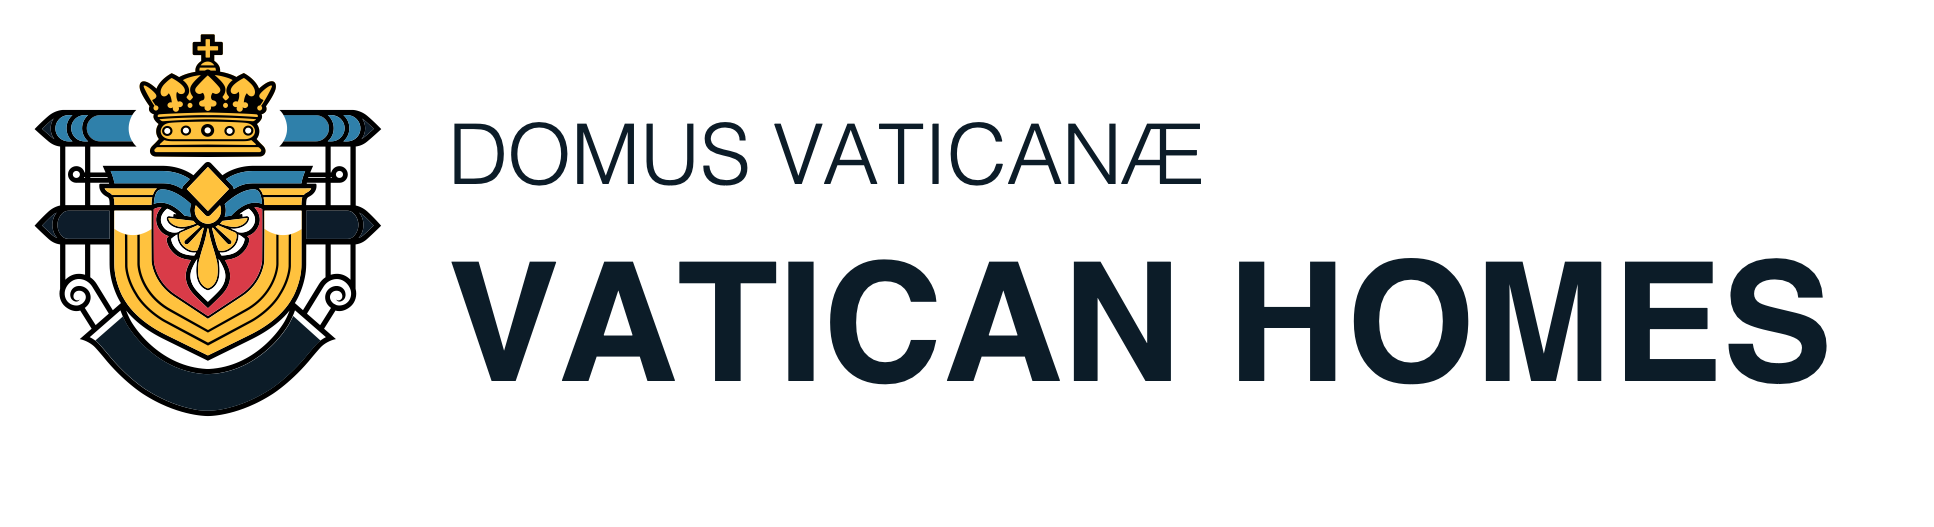 Vatican Homes